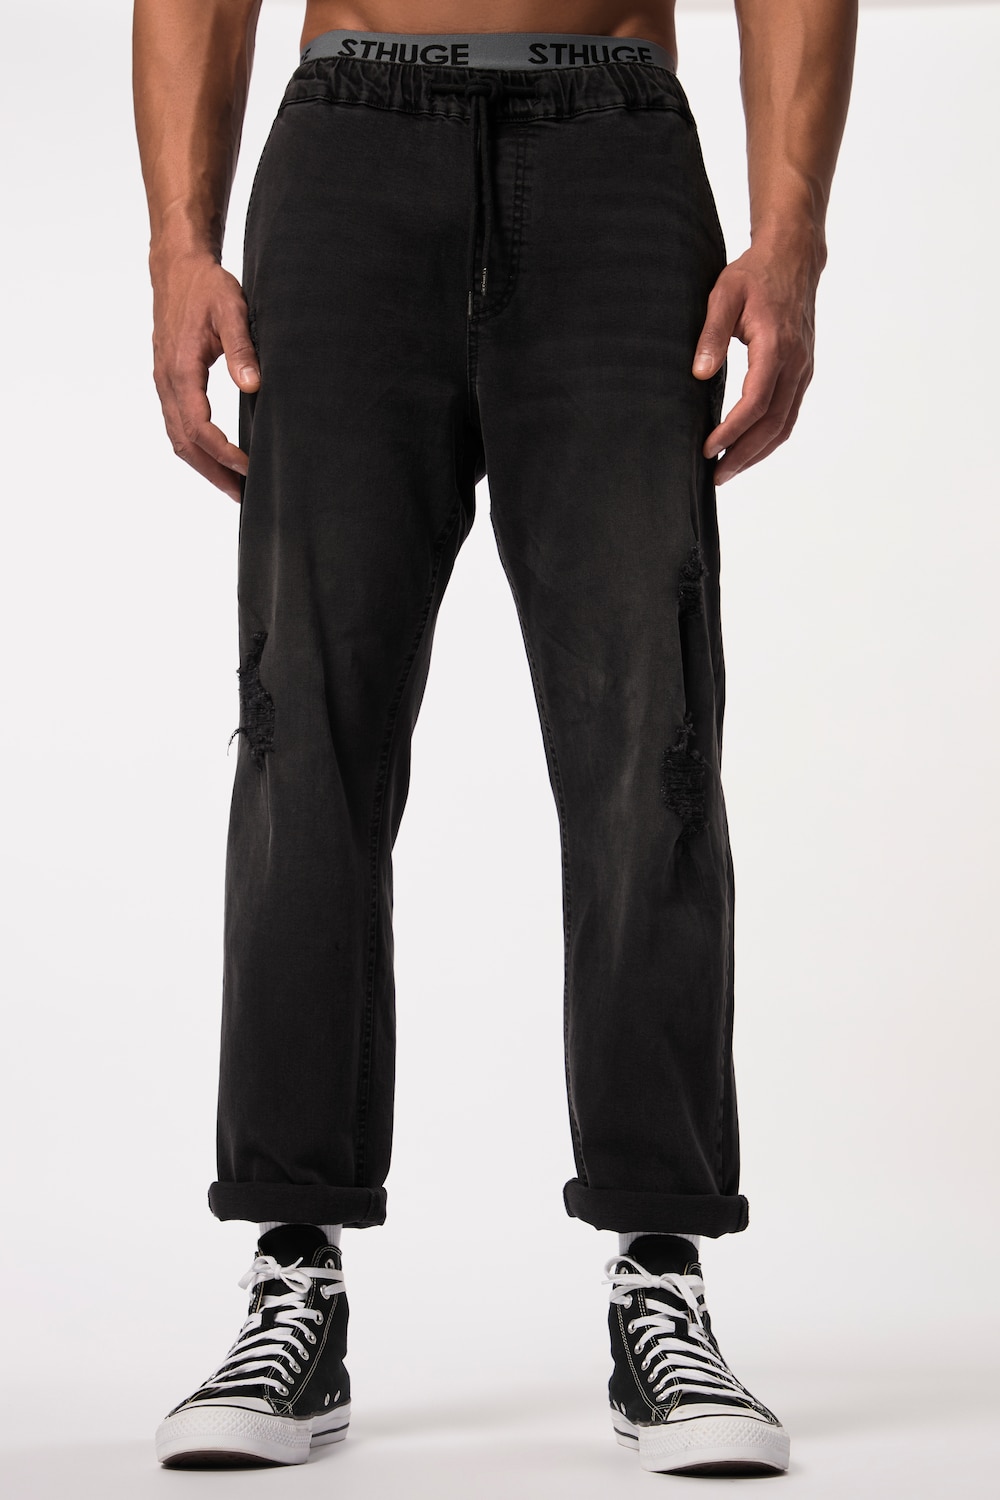 Grote Maten STHUGE jeans FLEXLASTIC®male, zwart, Maat: 5XL, Katoen, STHUGE